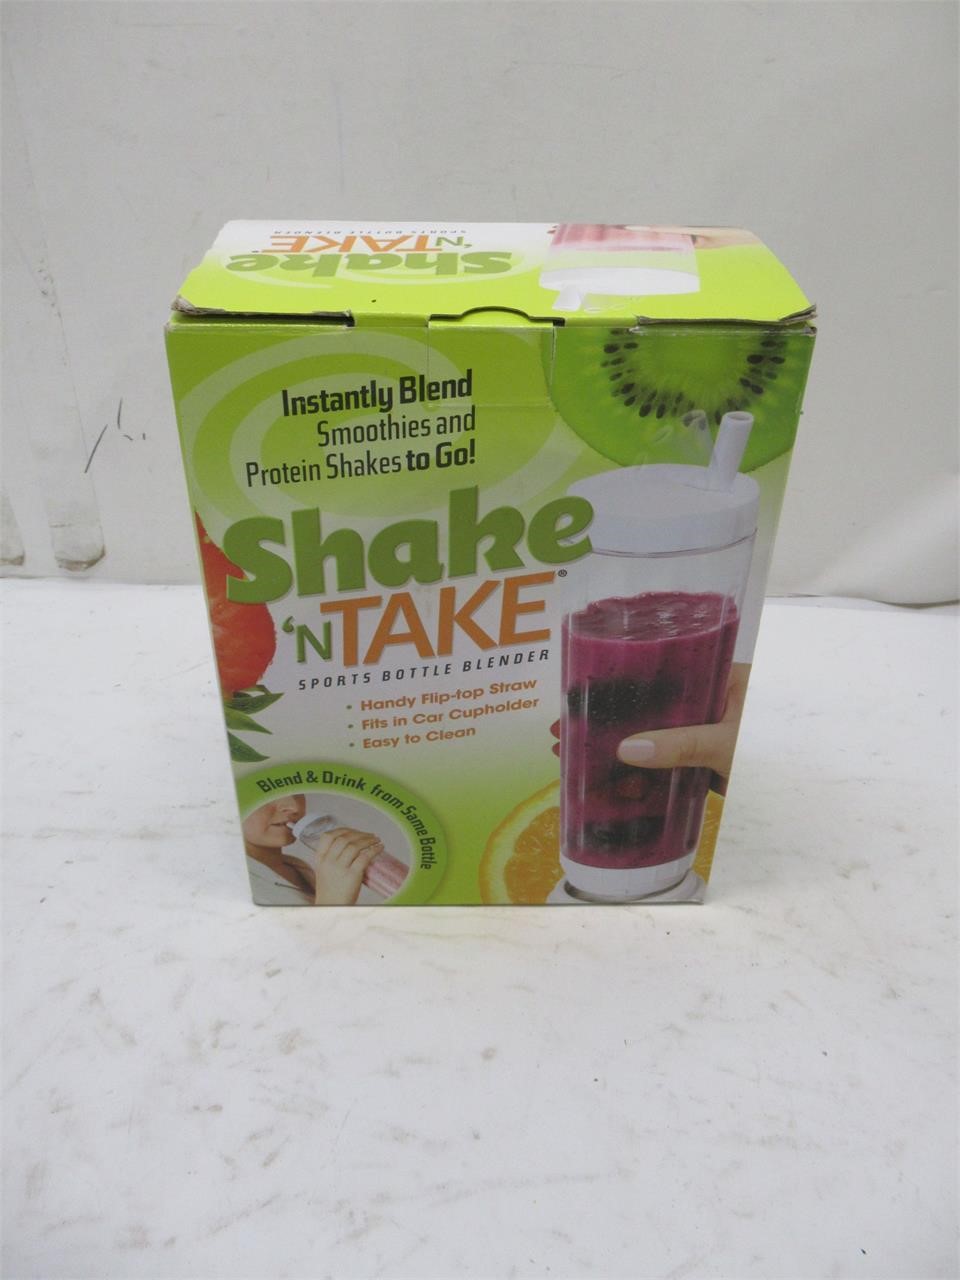 Shake 'n Take smoothie maker